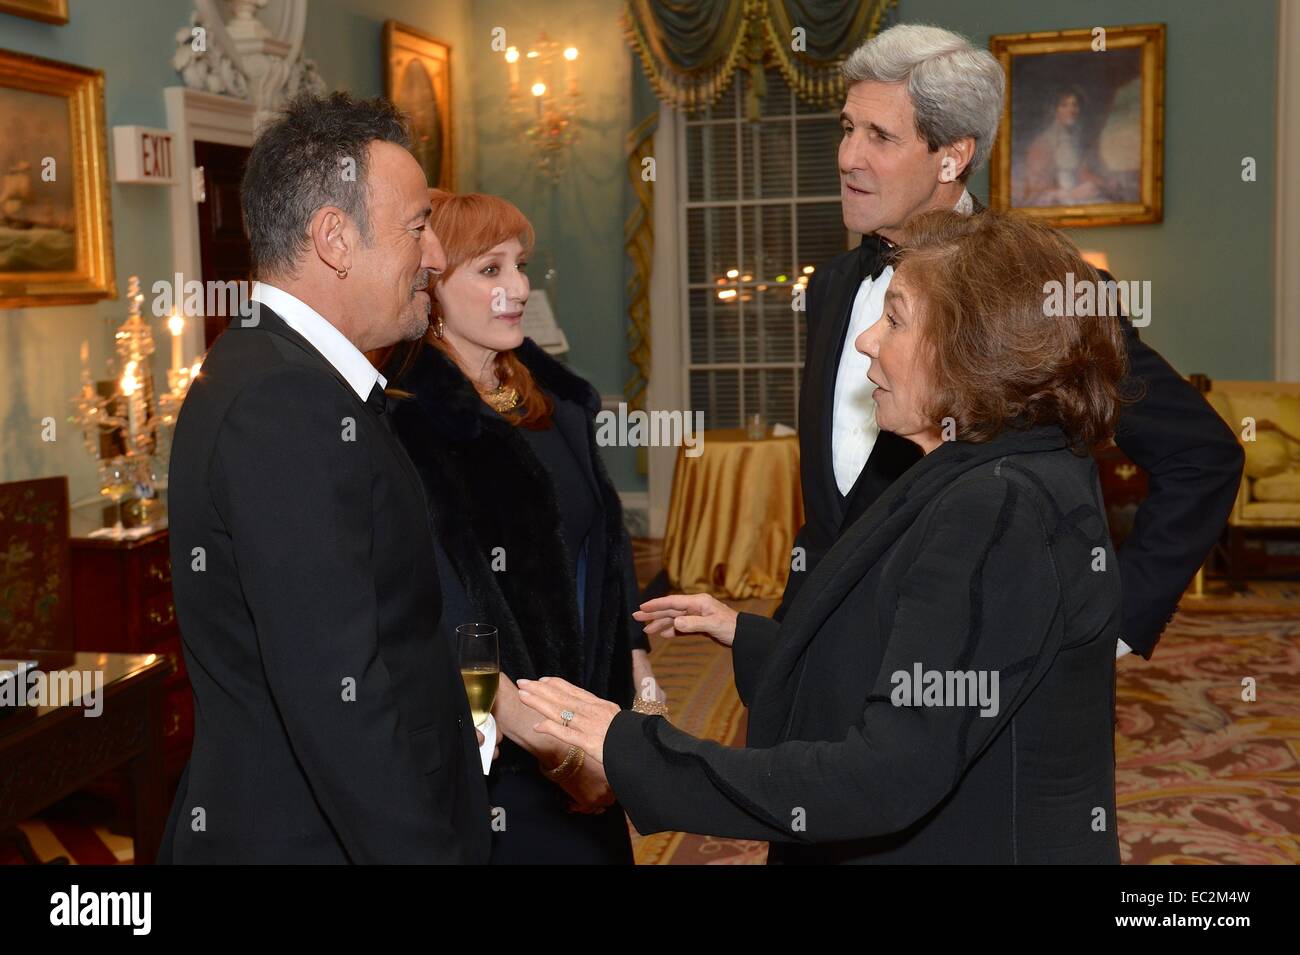 Le secrétaire d'Etat américain John Kerry et son épouse, Teresa Heinz Kerry, chat avec Singer-Songwriter Bruce Springsteen et sa femme, Patti Scialfa, avant un dîner que le Secrétaire a organisé pour le Centre Kennedy 2014 personnes honorées au département d'Etat le 6 décembre 2014 à Washington, D.C Banque D'Images